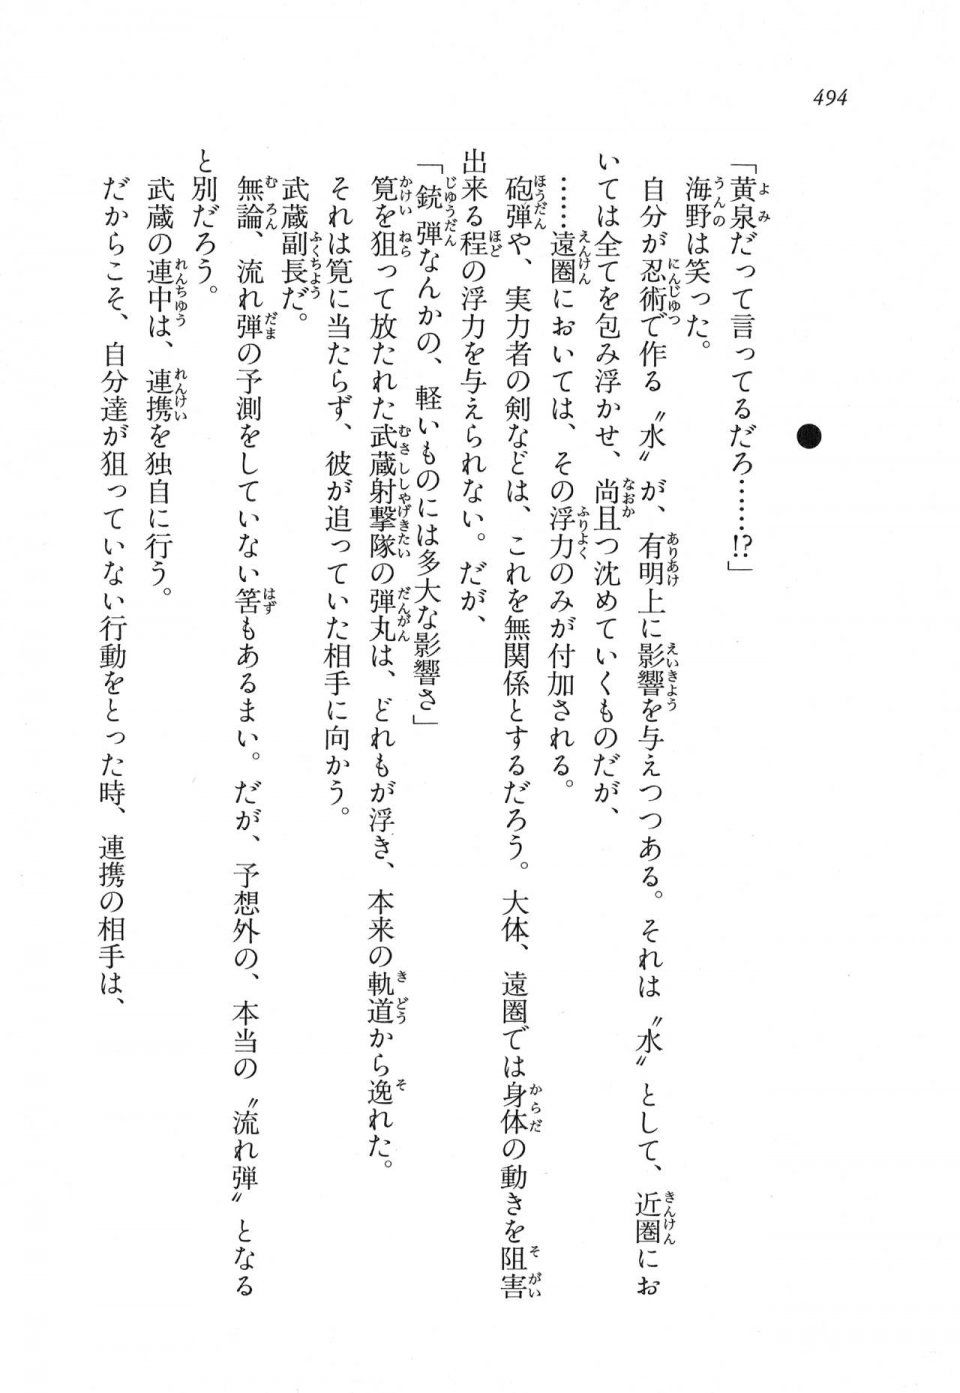 Kyoukai Senjou no Horizon LN Vol 11(5A) - Photo #494